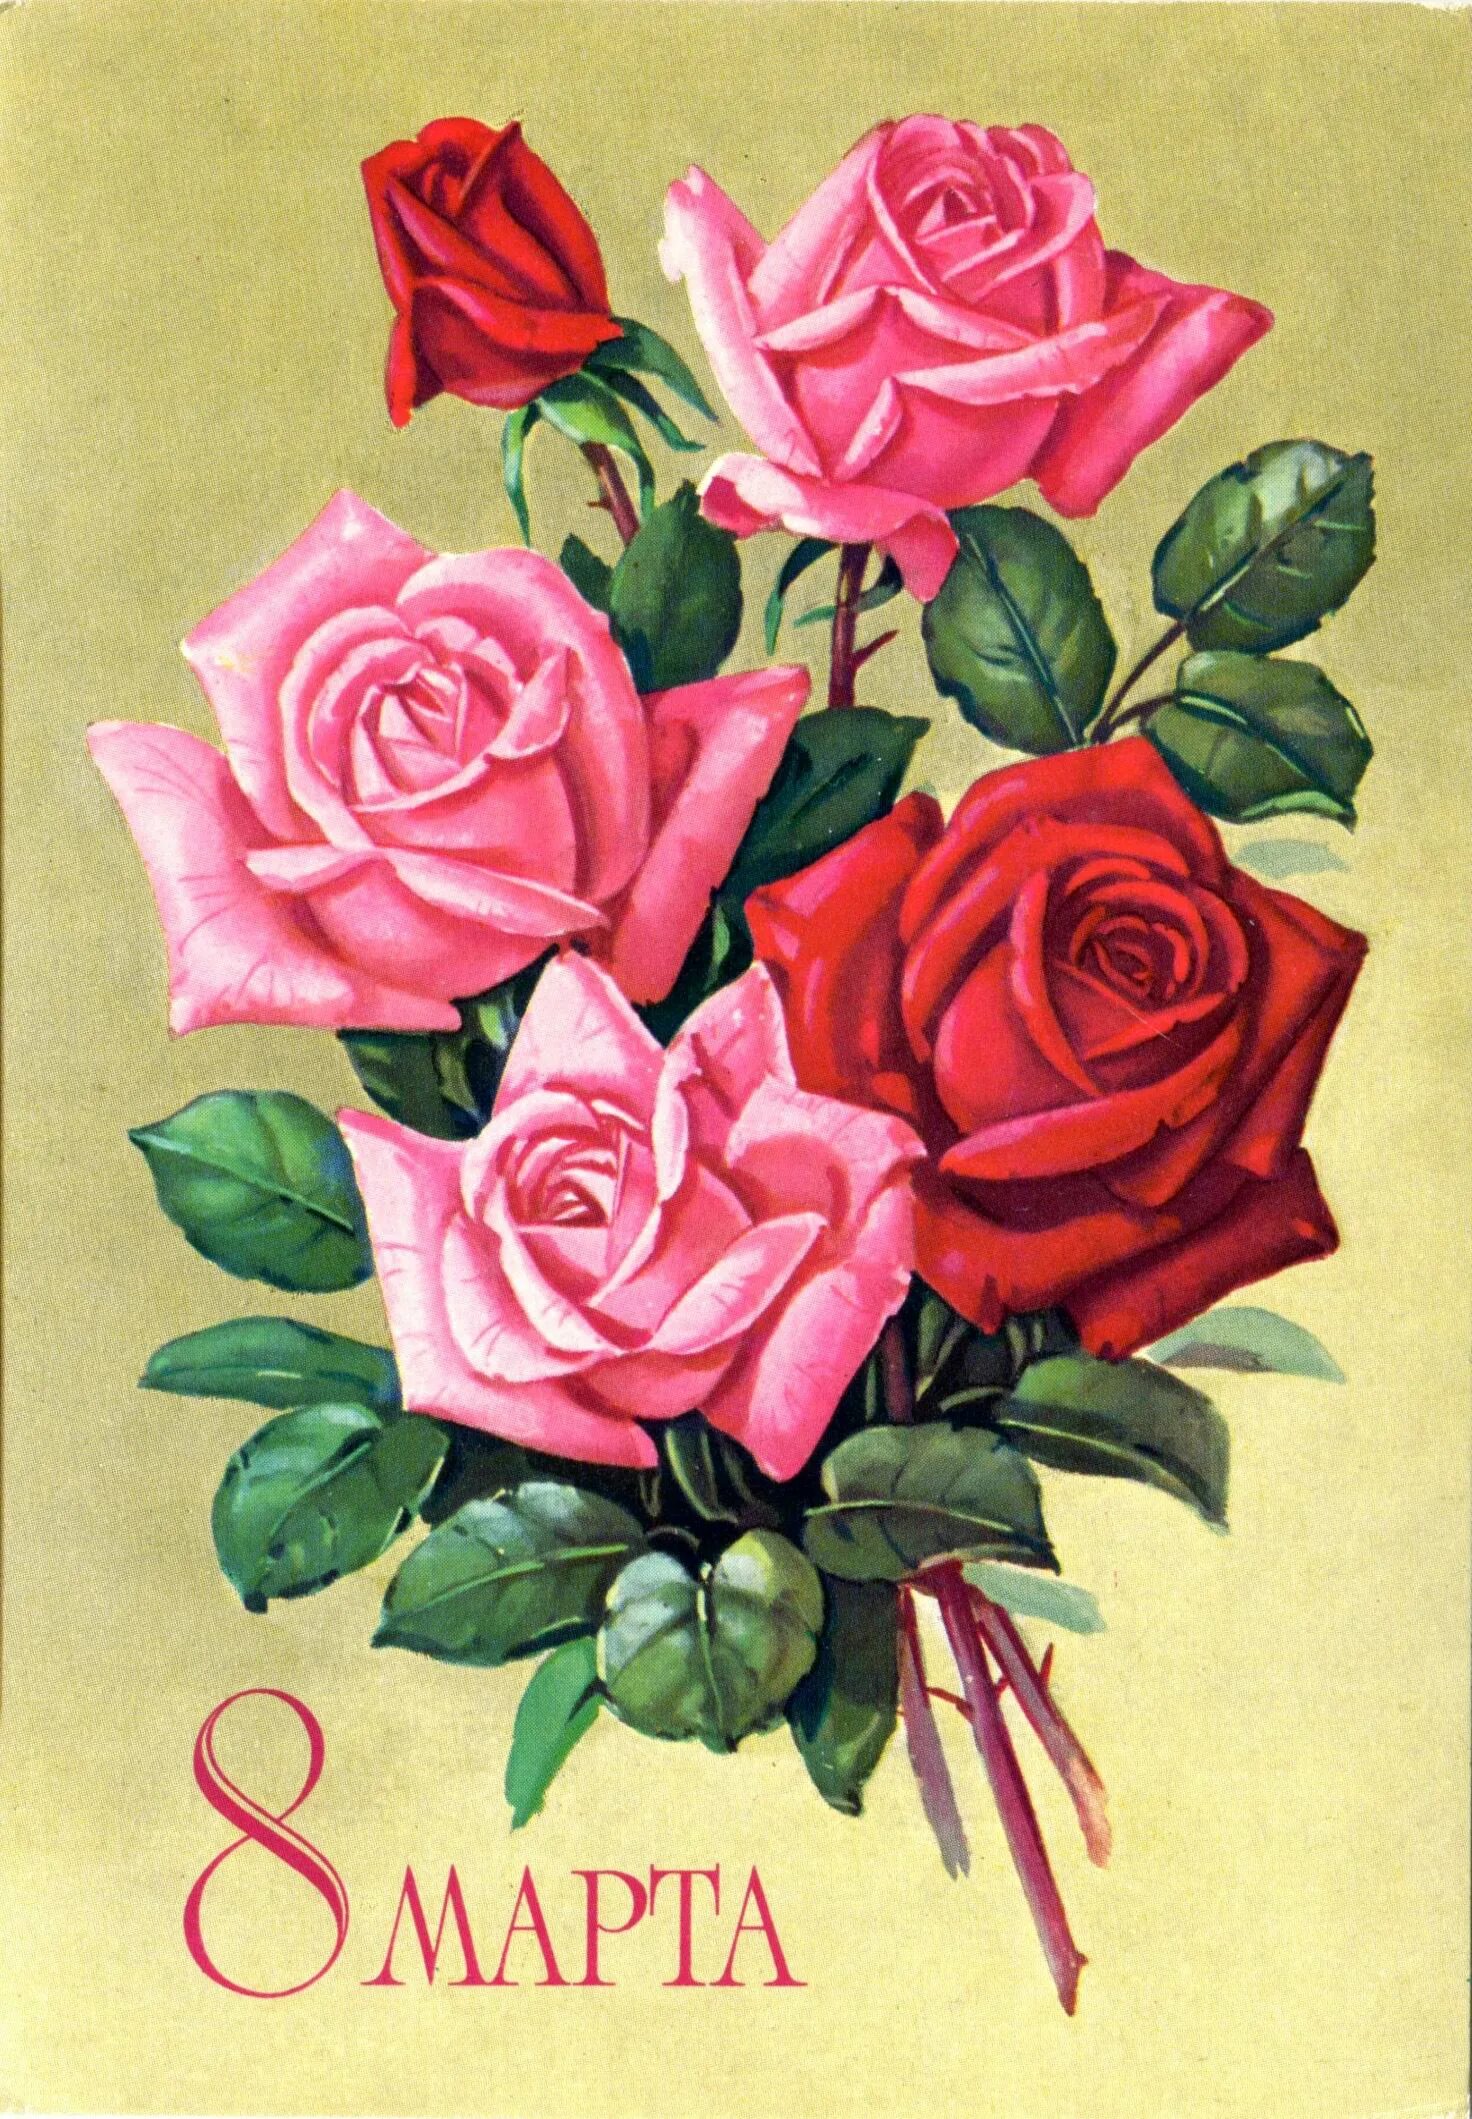 Рисунок к 8 марту с цветами